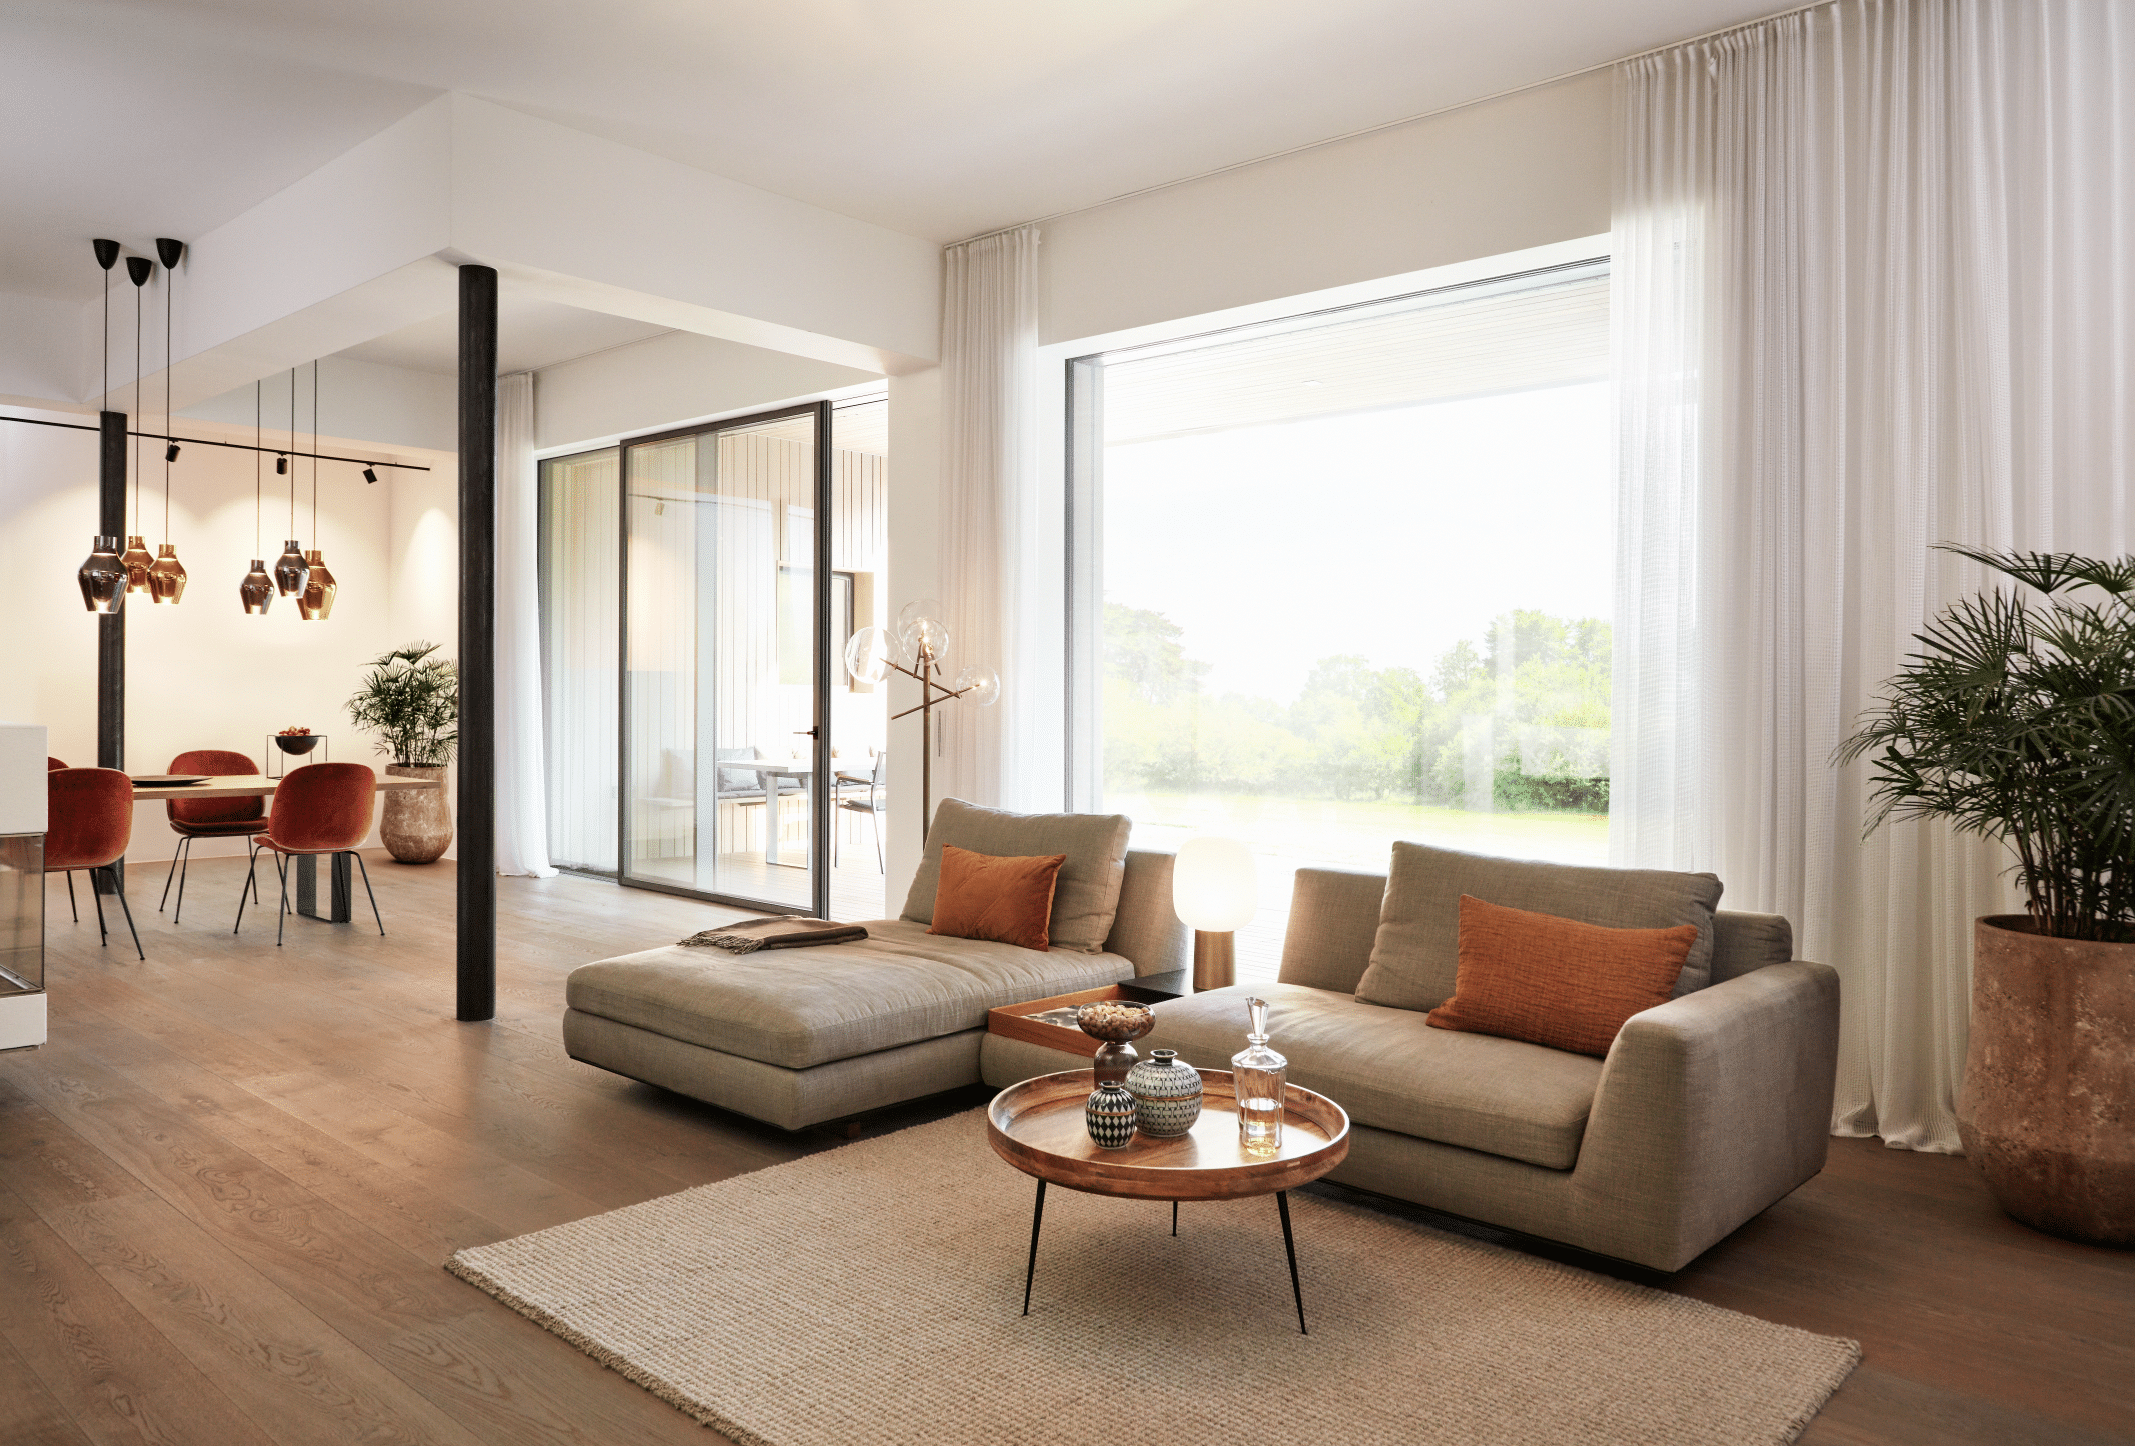 Wohnzimmer mit Holzboden, Wohnlandschaft und deckenhohen Fenstern sowie Glasschiebetüren mit schwarzem Rahmen aus der Serie ONE by Josko.